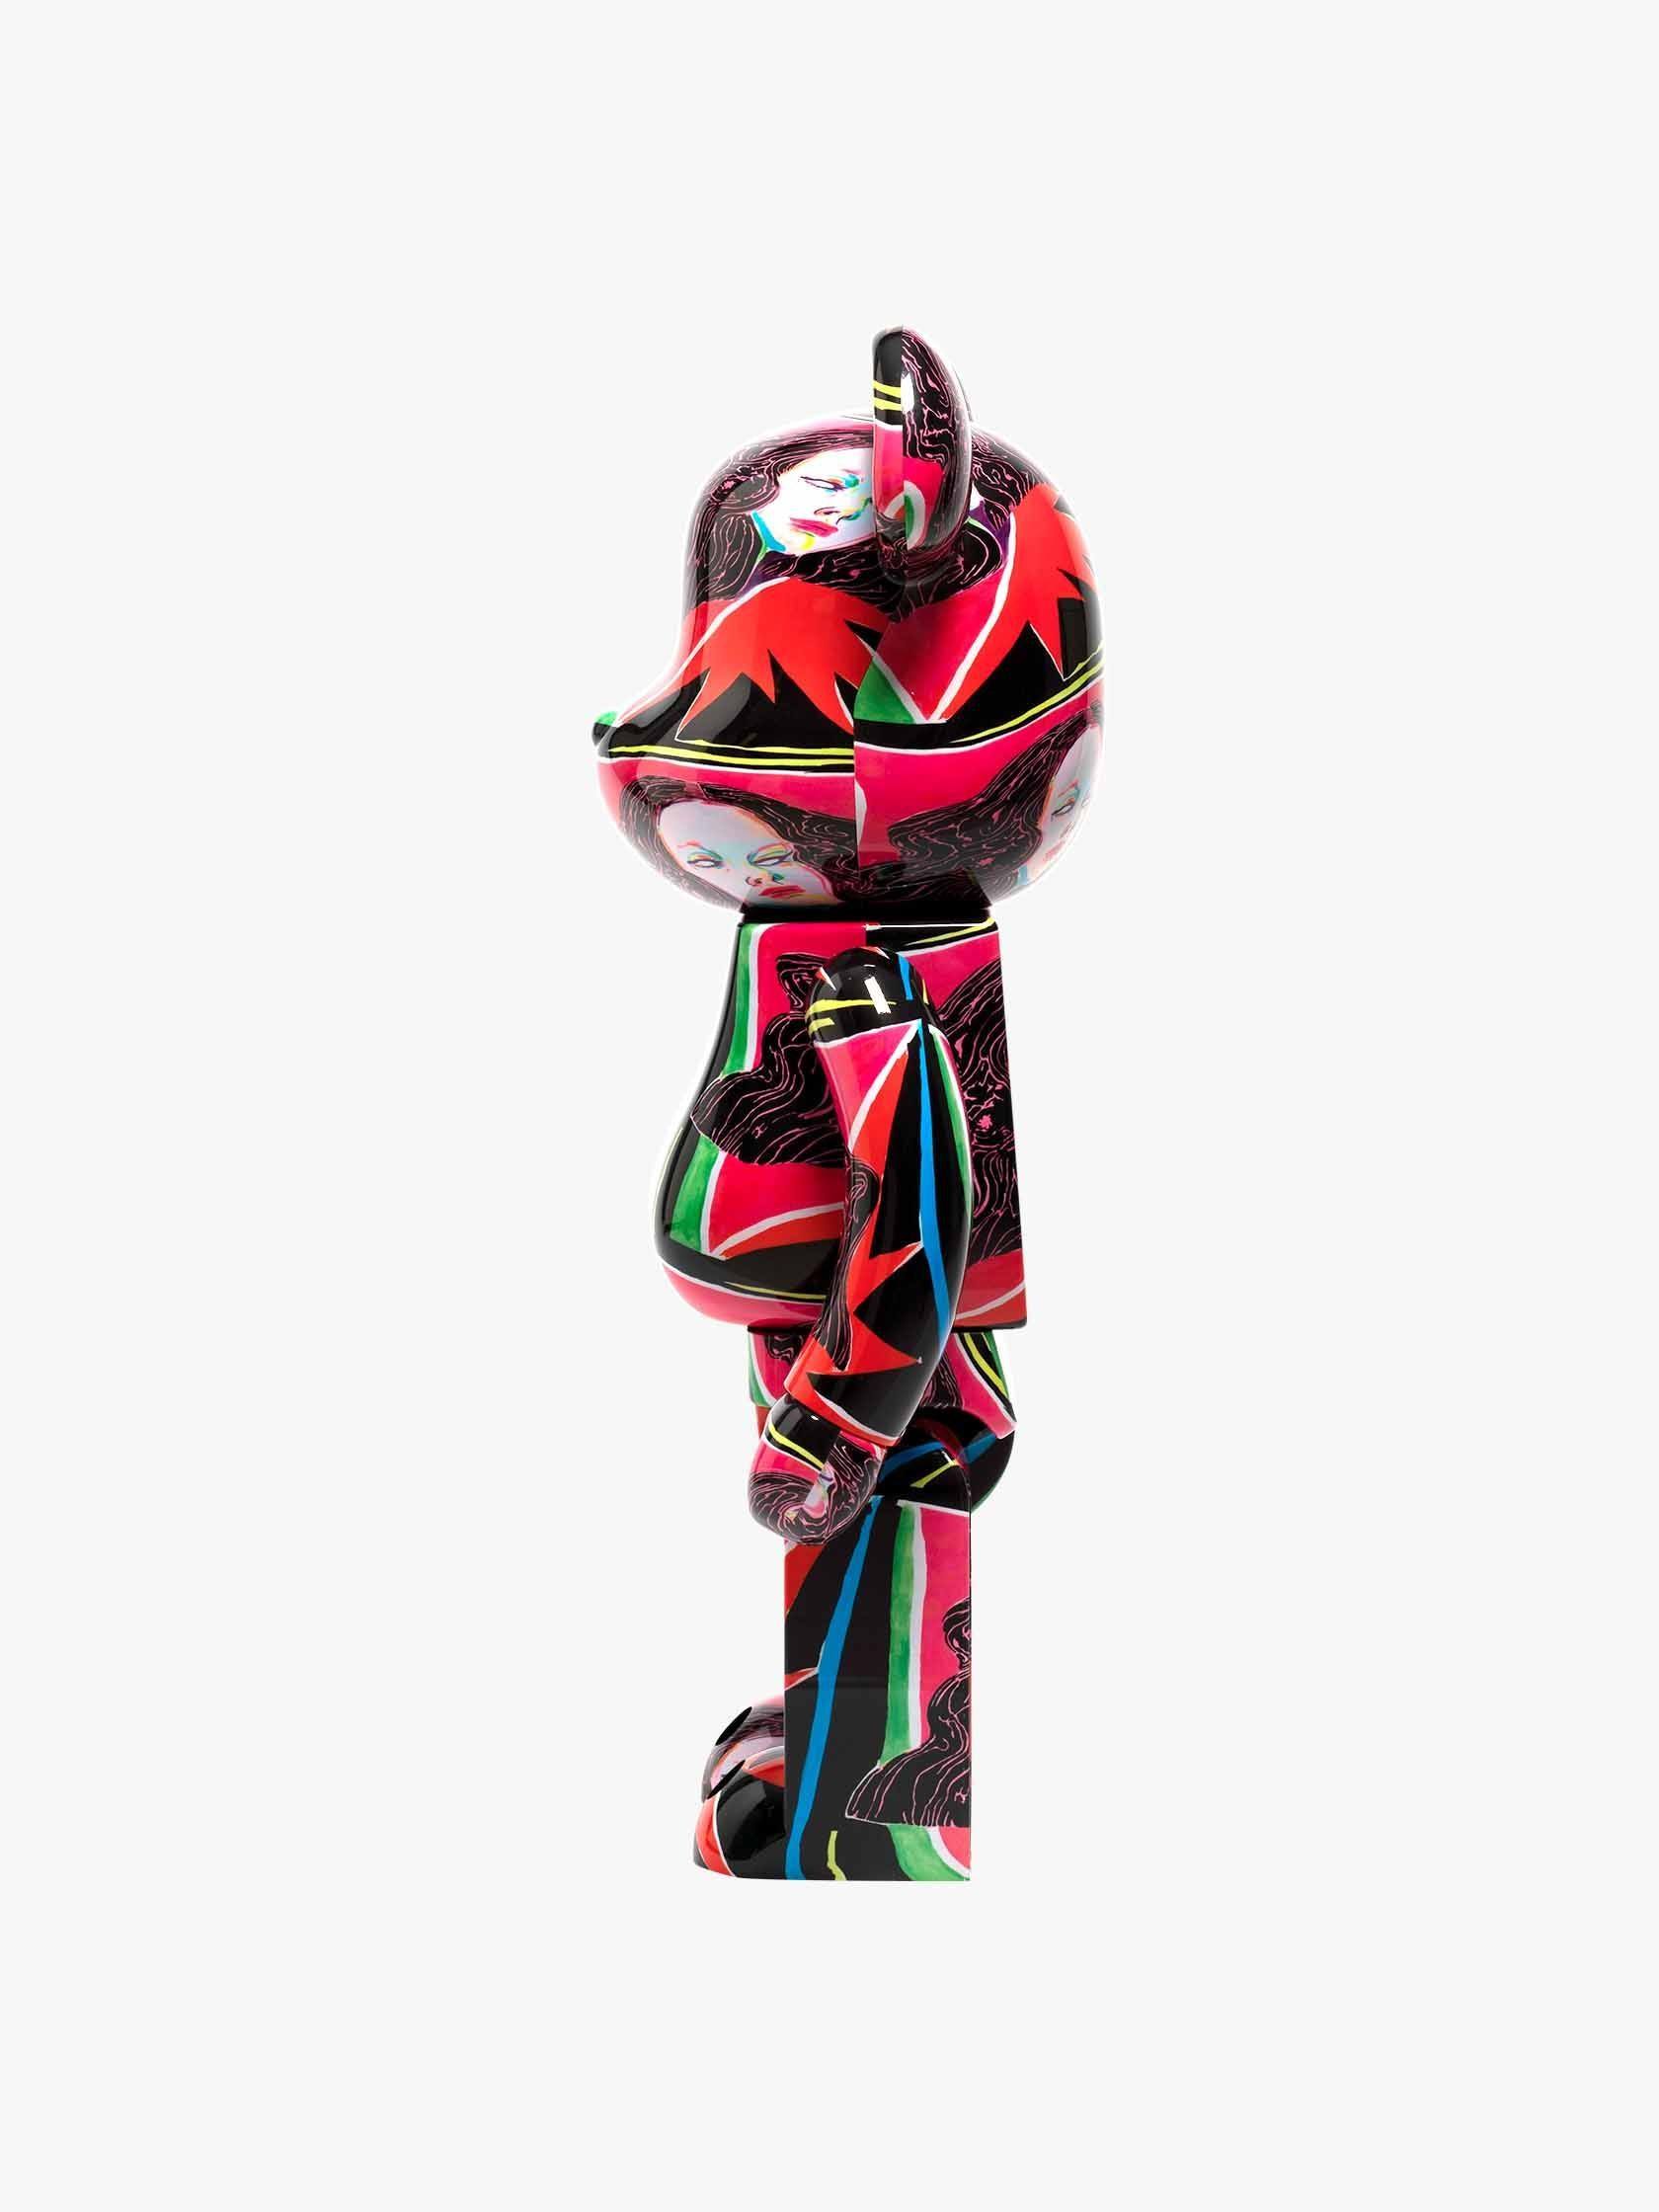 BE@RBRICK Goddess by Saiko Otake 1000% by Medicom Toy - Mankovsky Gallery